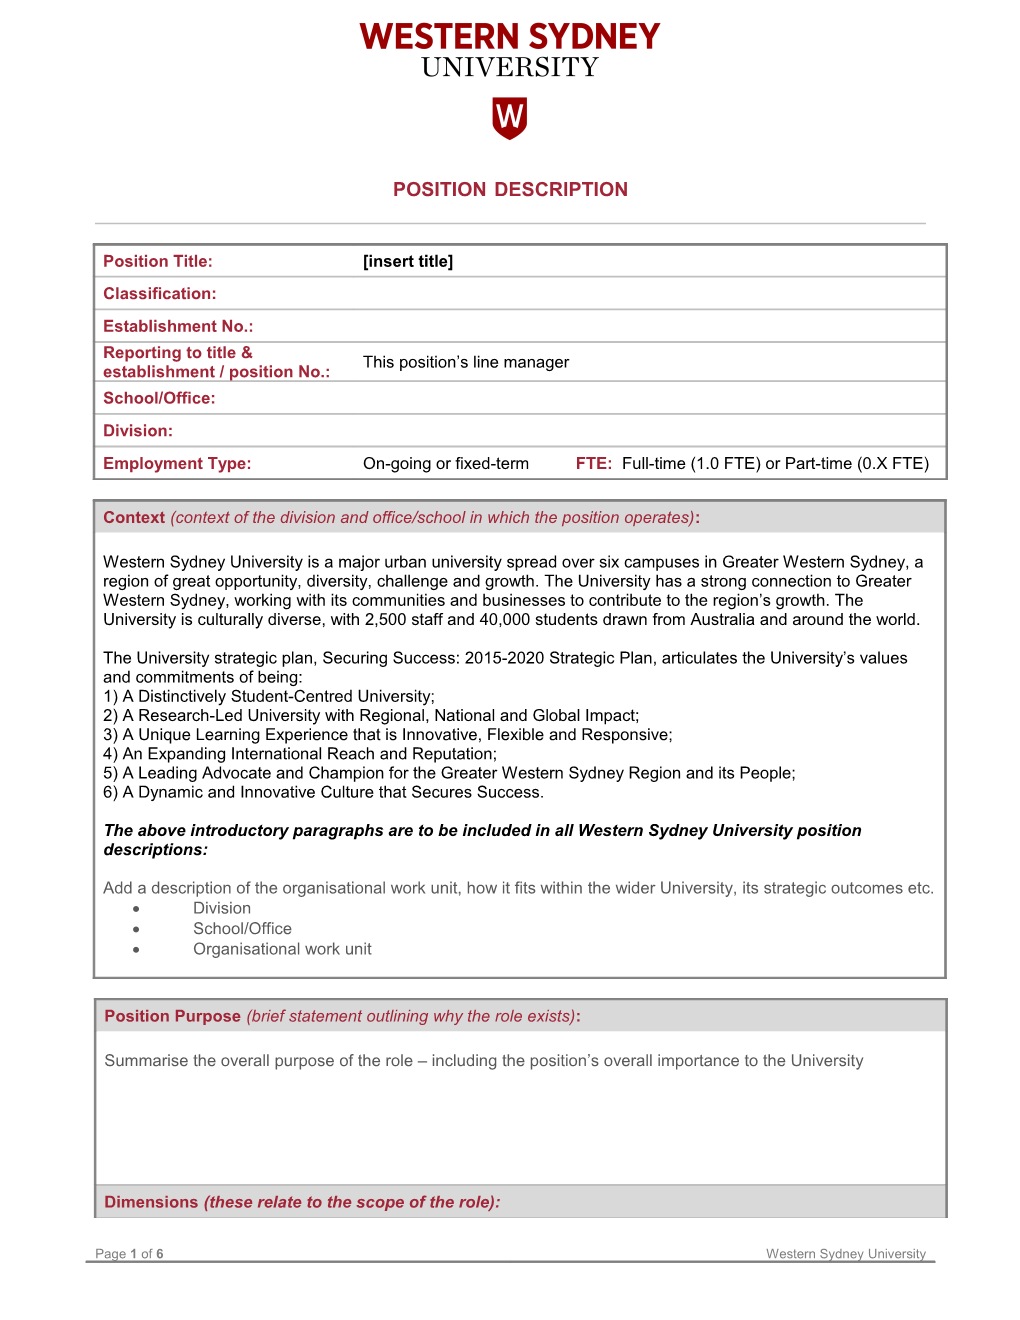 UWS Position Description Template